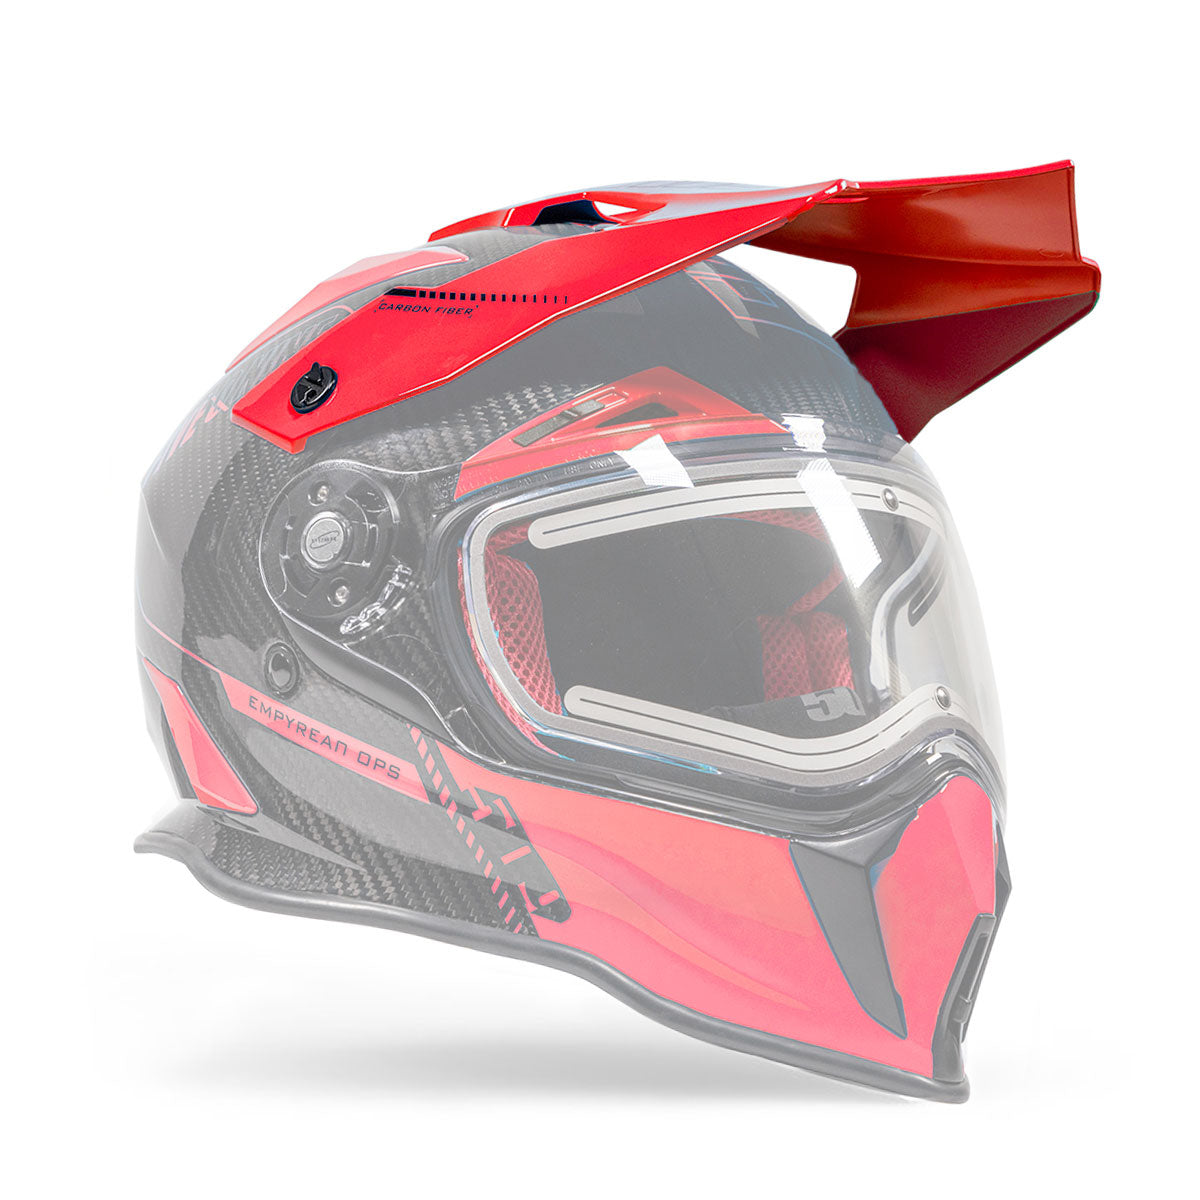 Visor for Delta R3 Carbon Fiber Helmets